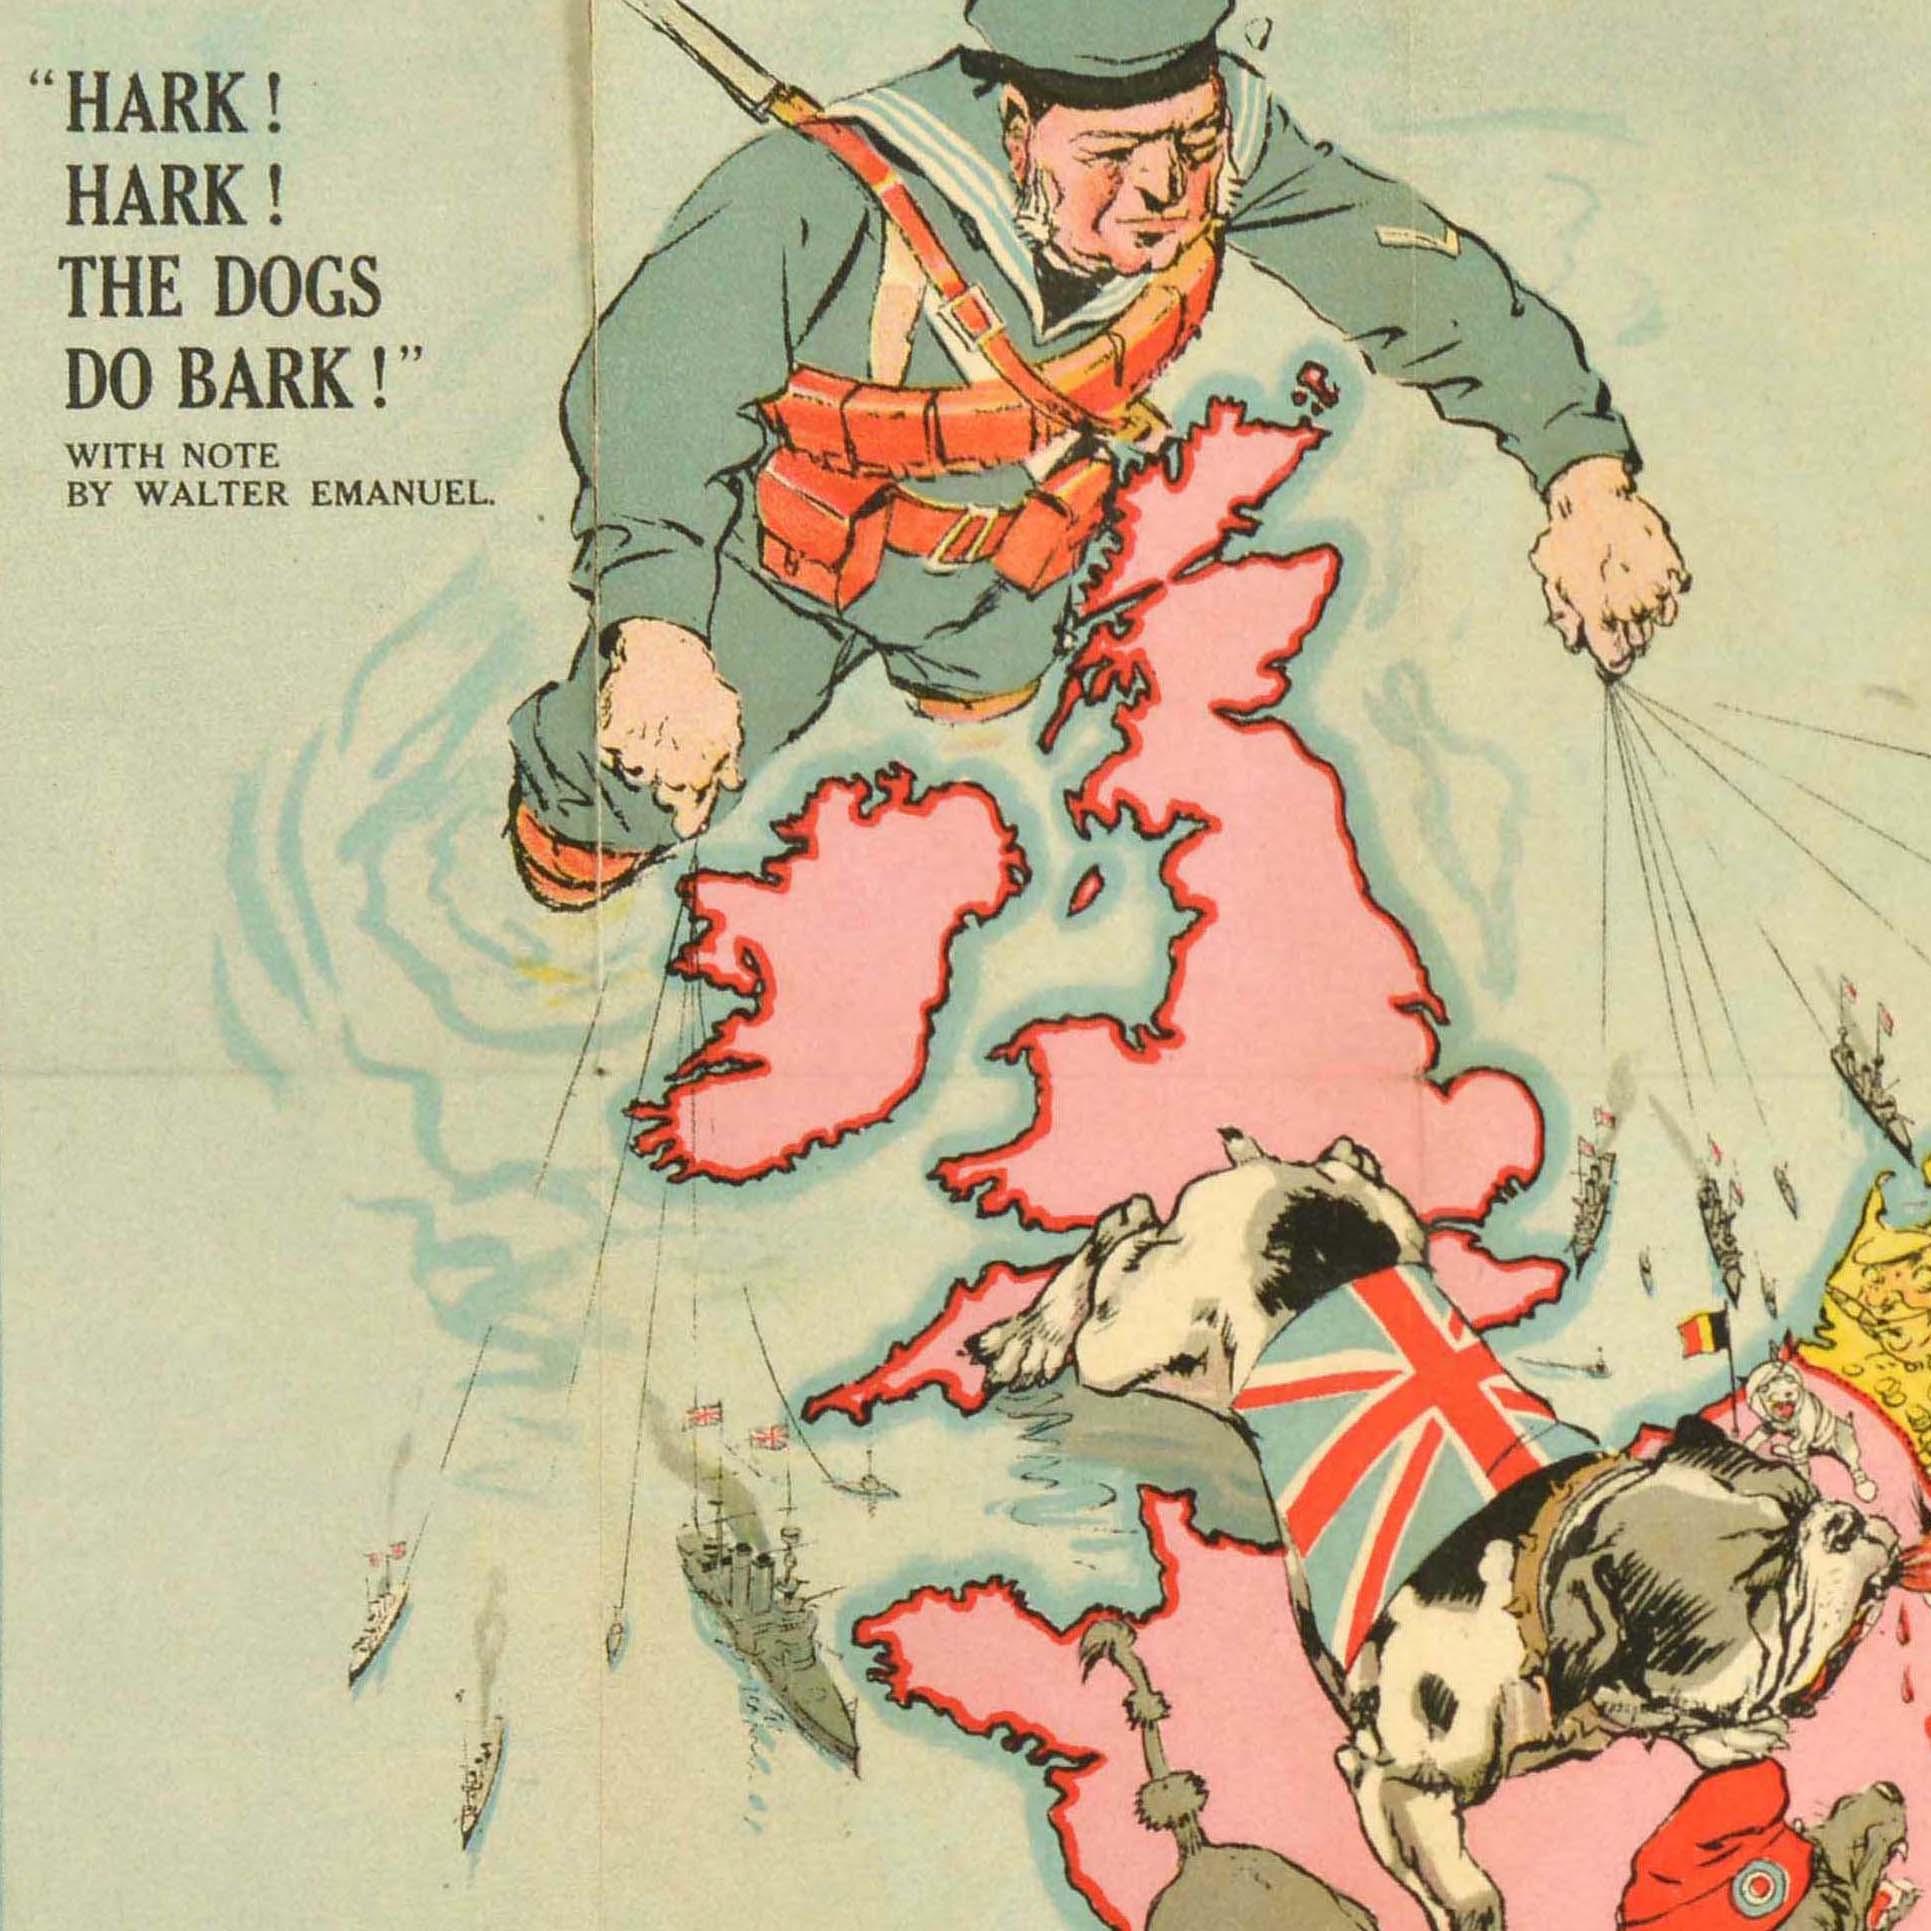 Originales antikes Poster aus dem Ersten Weltkrieg - Hark! Horch! Die Hunde bellen doch! Mit einer Notiz von Walter Emanuel - mit einer seriös-komischen Karte von Europa im Krieg mit Karikaturporträts von Soldaten und einigen Ländern, die durch